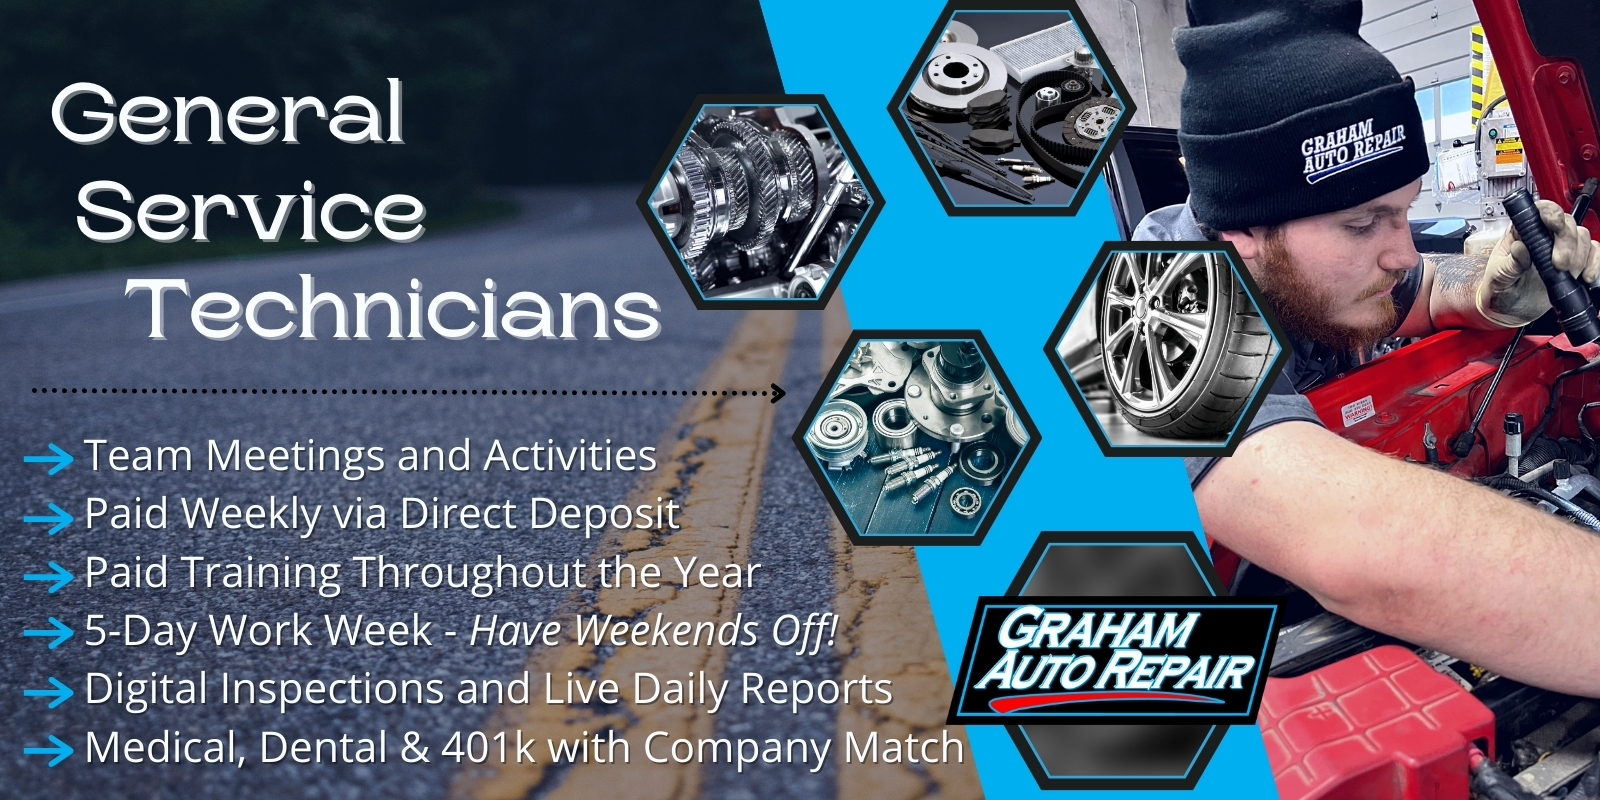 General Service Automotive Technician Job at Graham Auto Repair